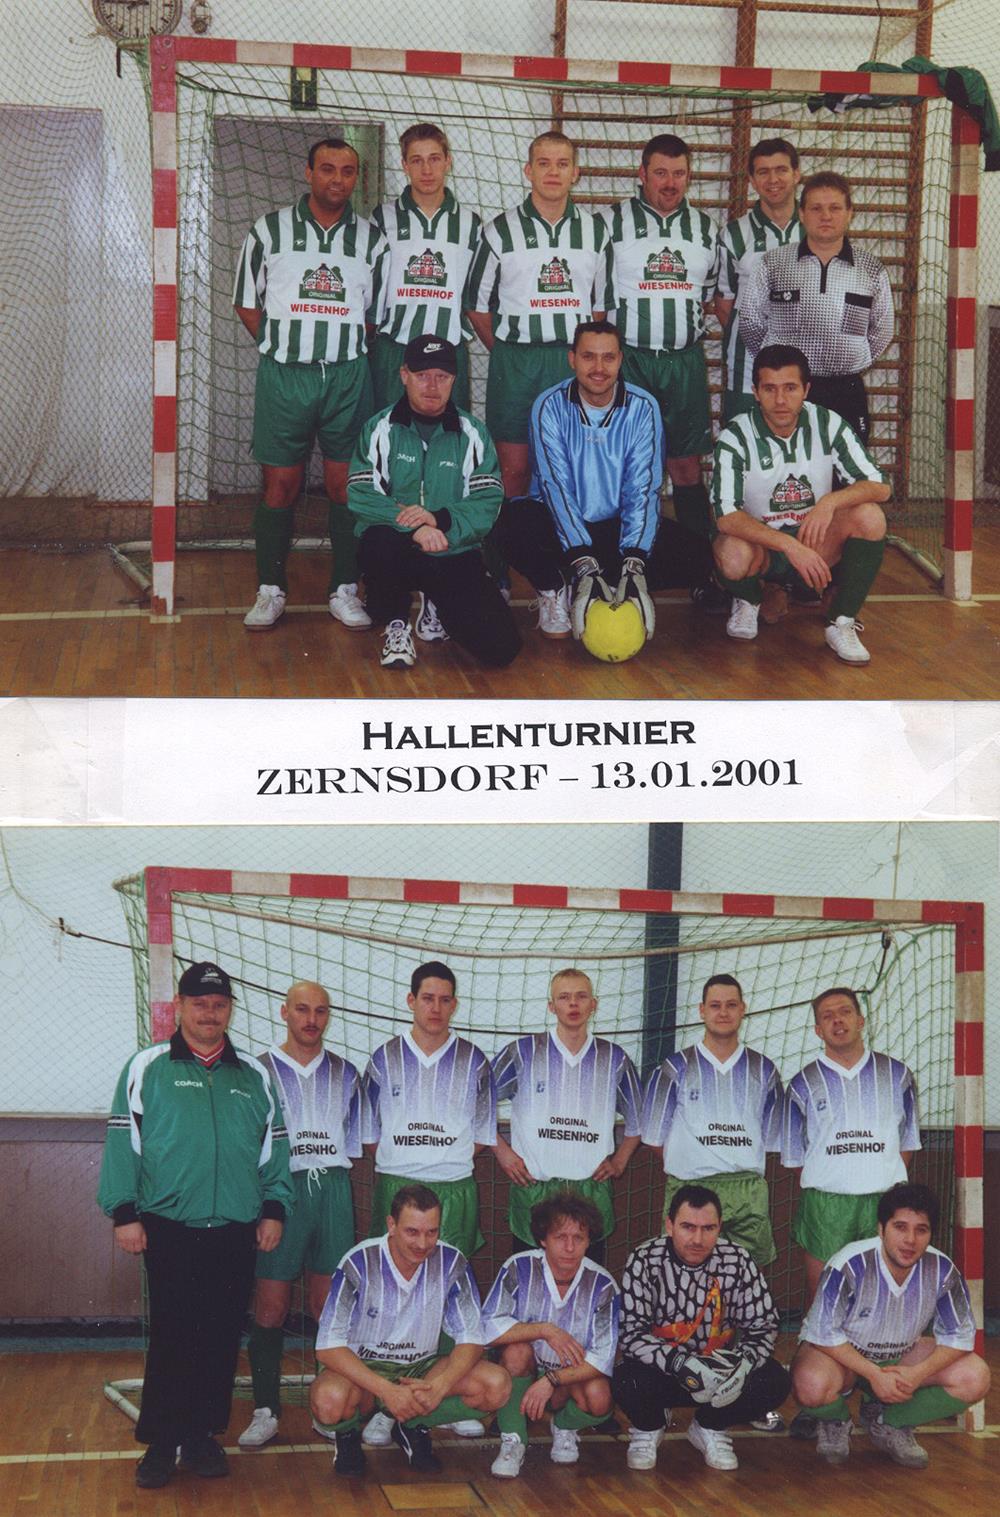 2001: Hallenturnier in Zernsdorf